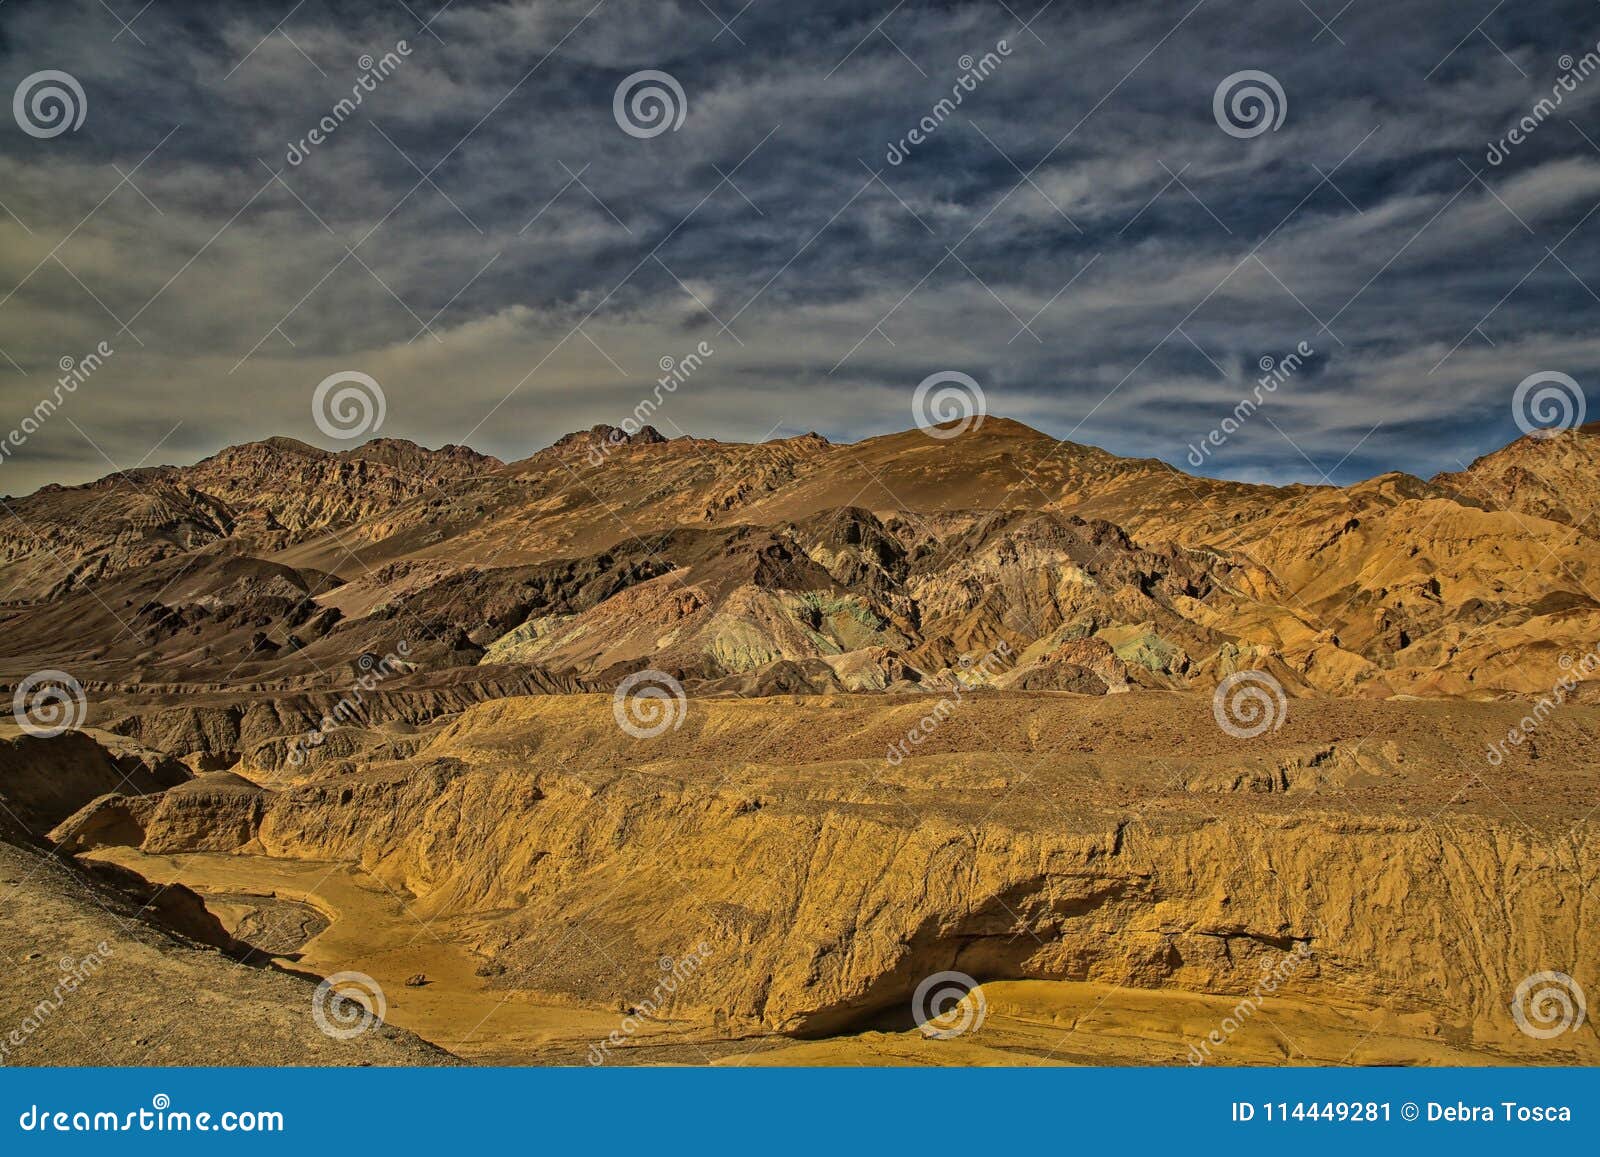 artistÃ¢â¬â¢s palette mountain landscape